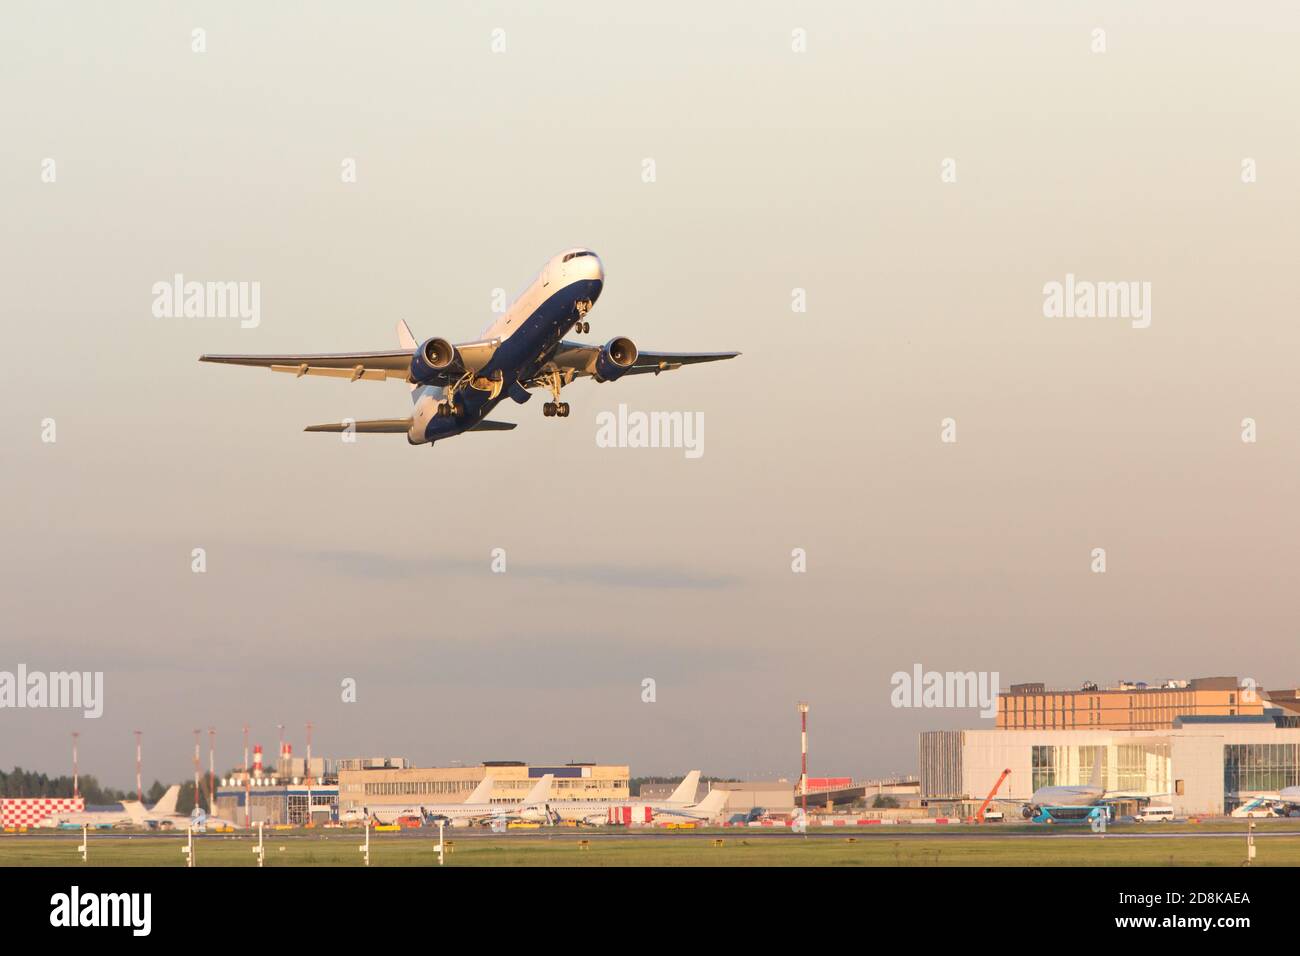 Flugzeug, das am Sommertag abfliegt, Flughafen im Hintergrund. Flugzeug fliegt bei Sonnenuntergang hoch. Urlaub, Flugkonzept Stockfoto